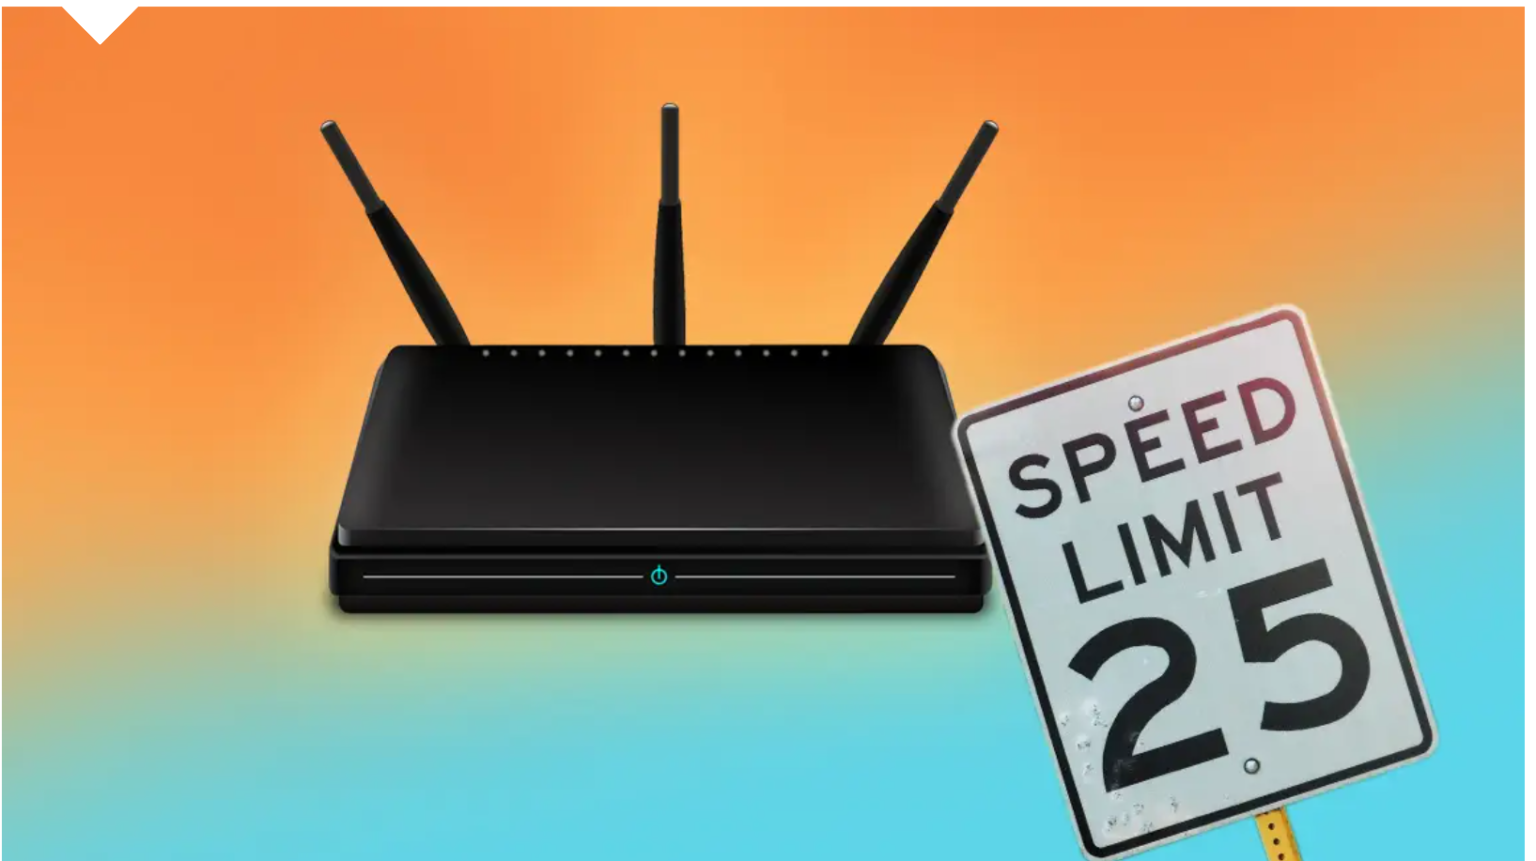 spectrum router login wireless